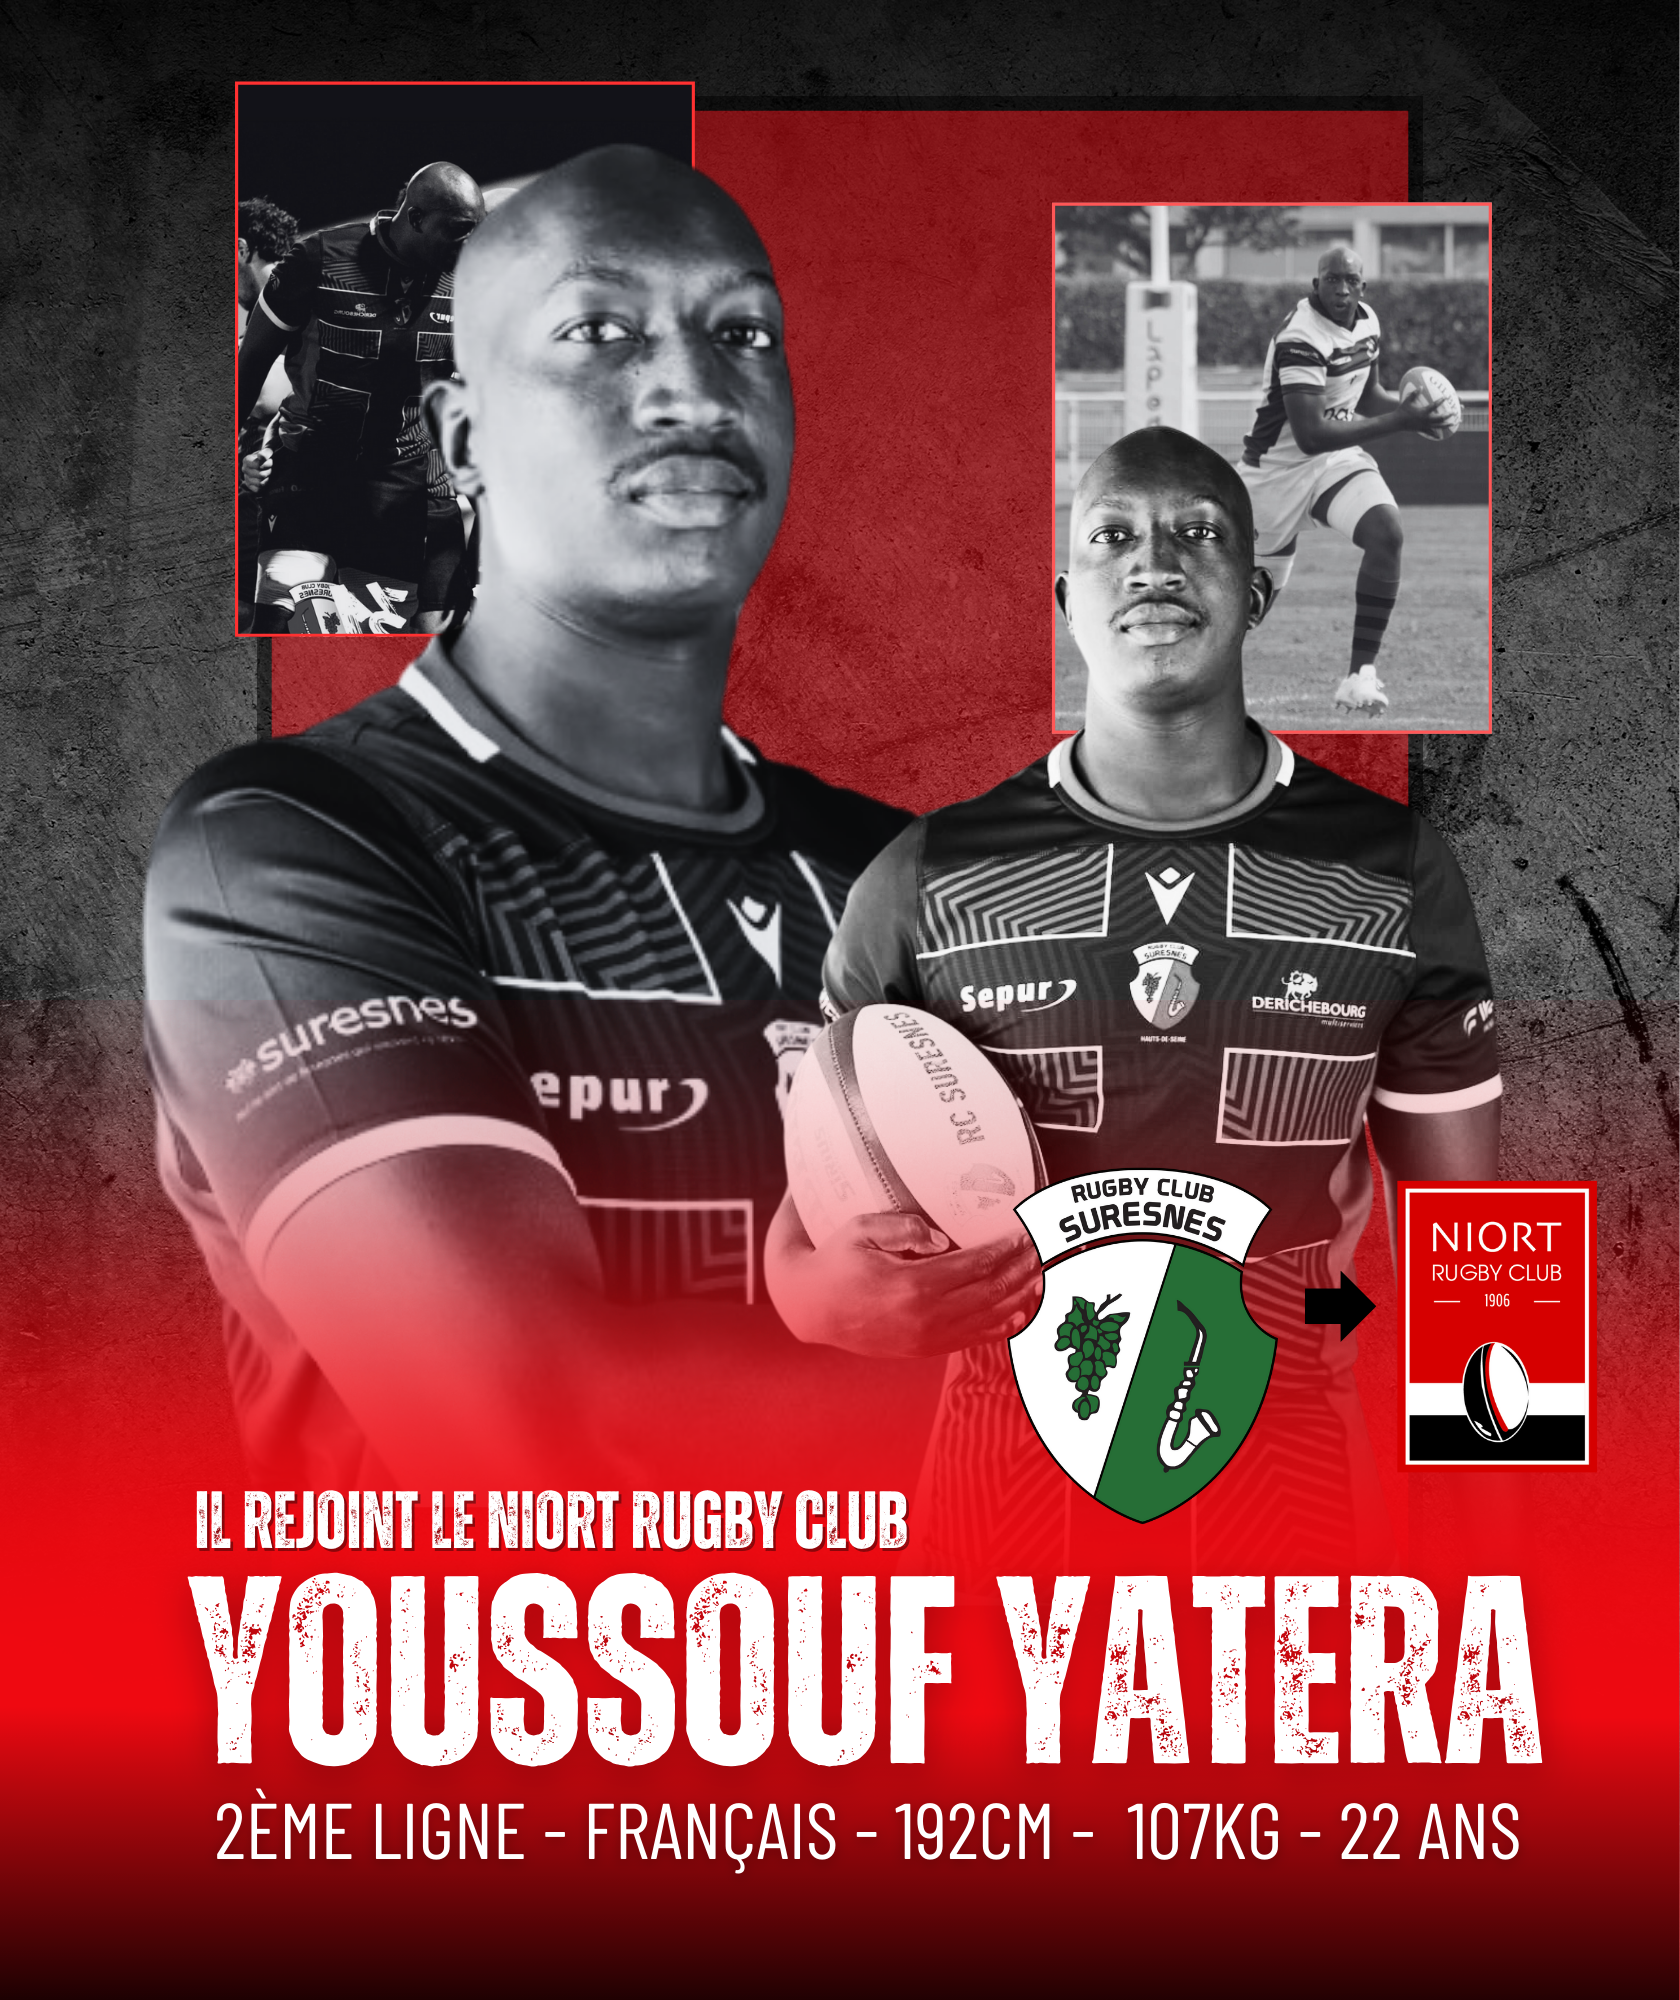 Youssouf yatera arrivée